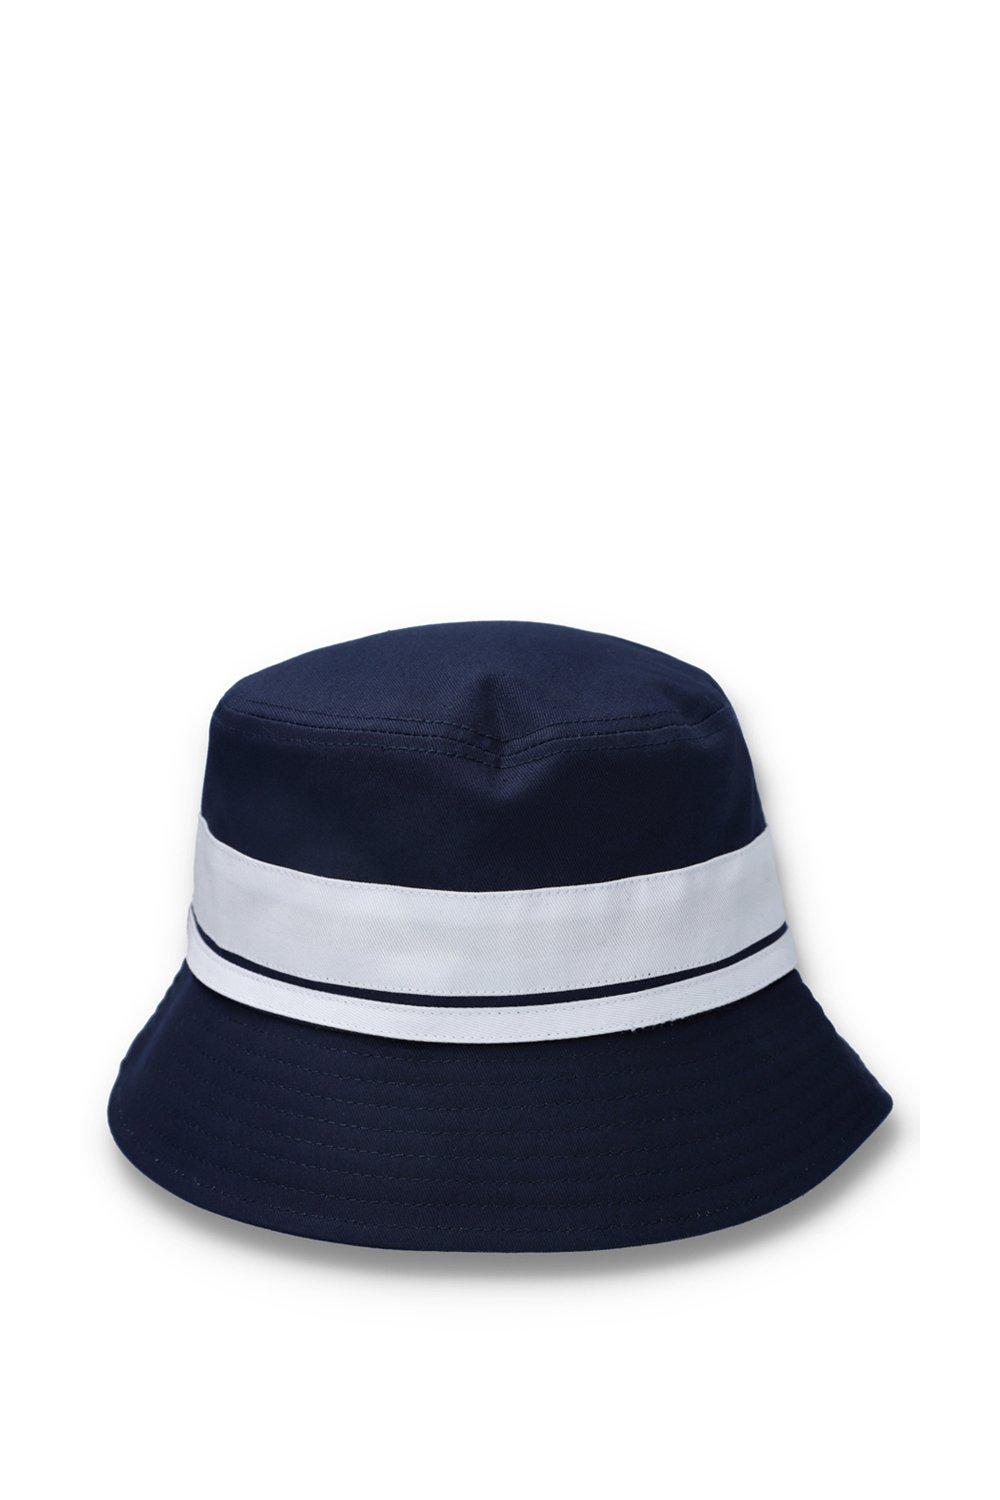 Accessories, Newsford Bucket Hat Navy